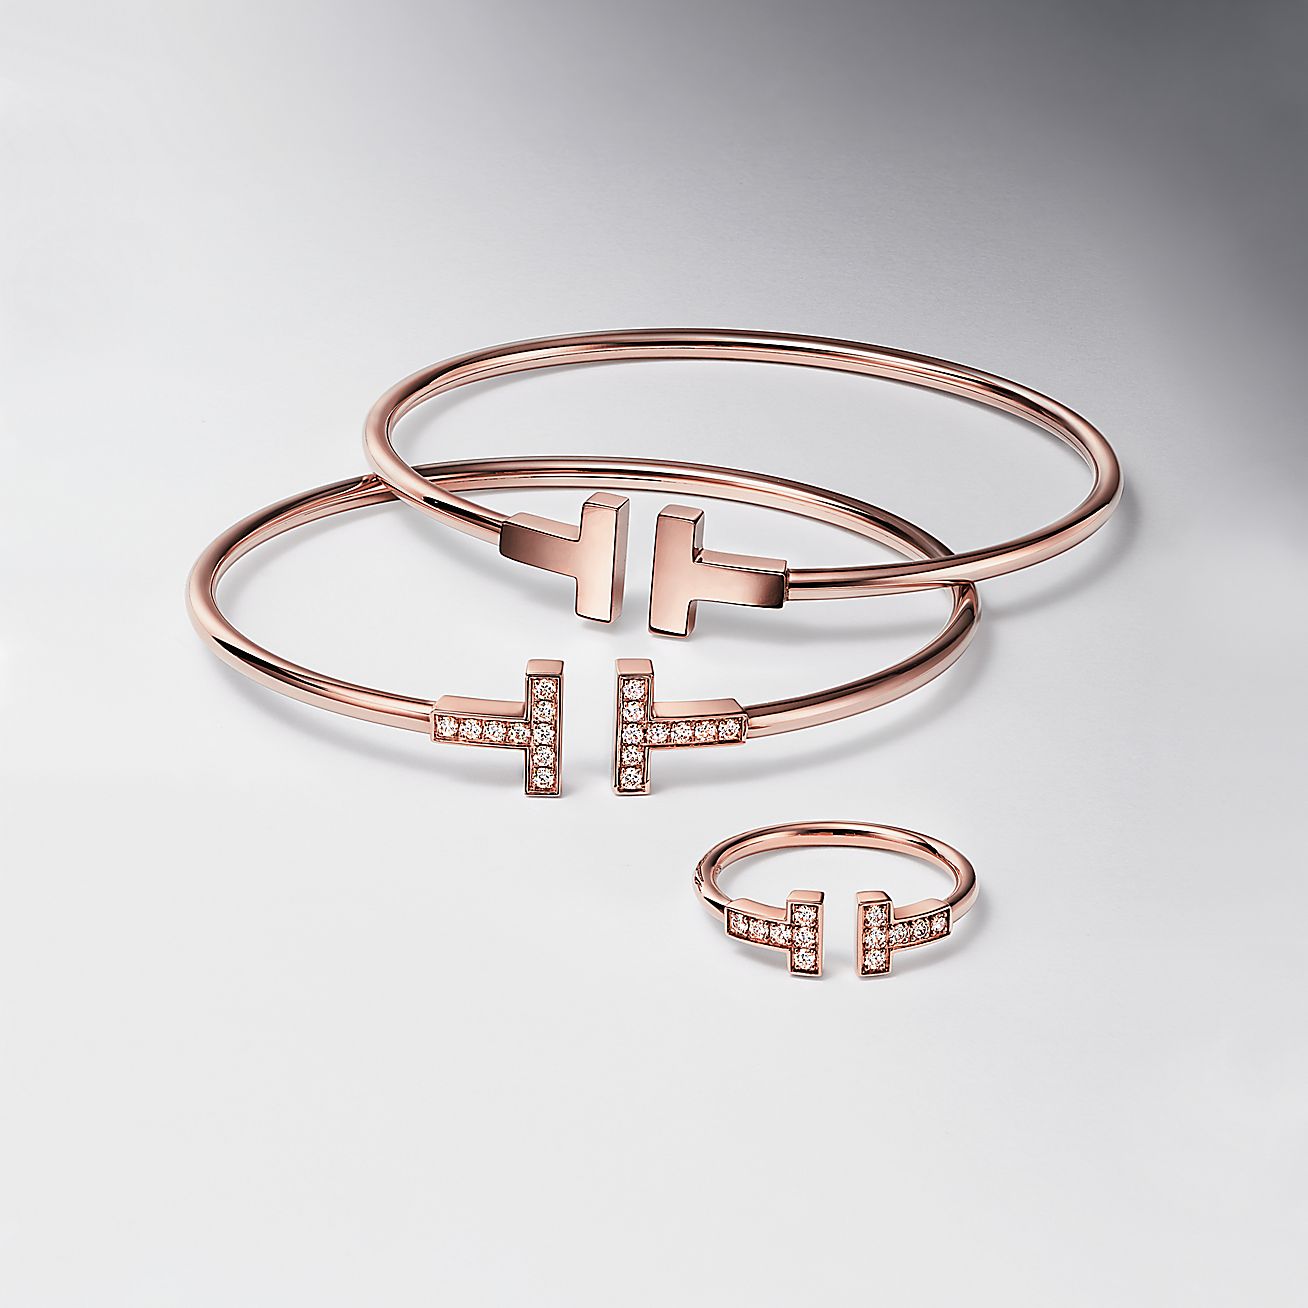 Tiffany & Co. Jazz Collection Diamond Inline Bracelet